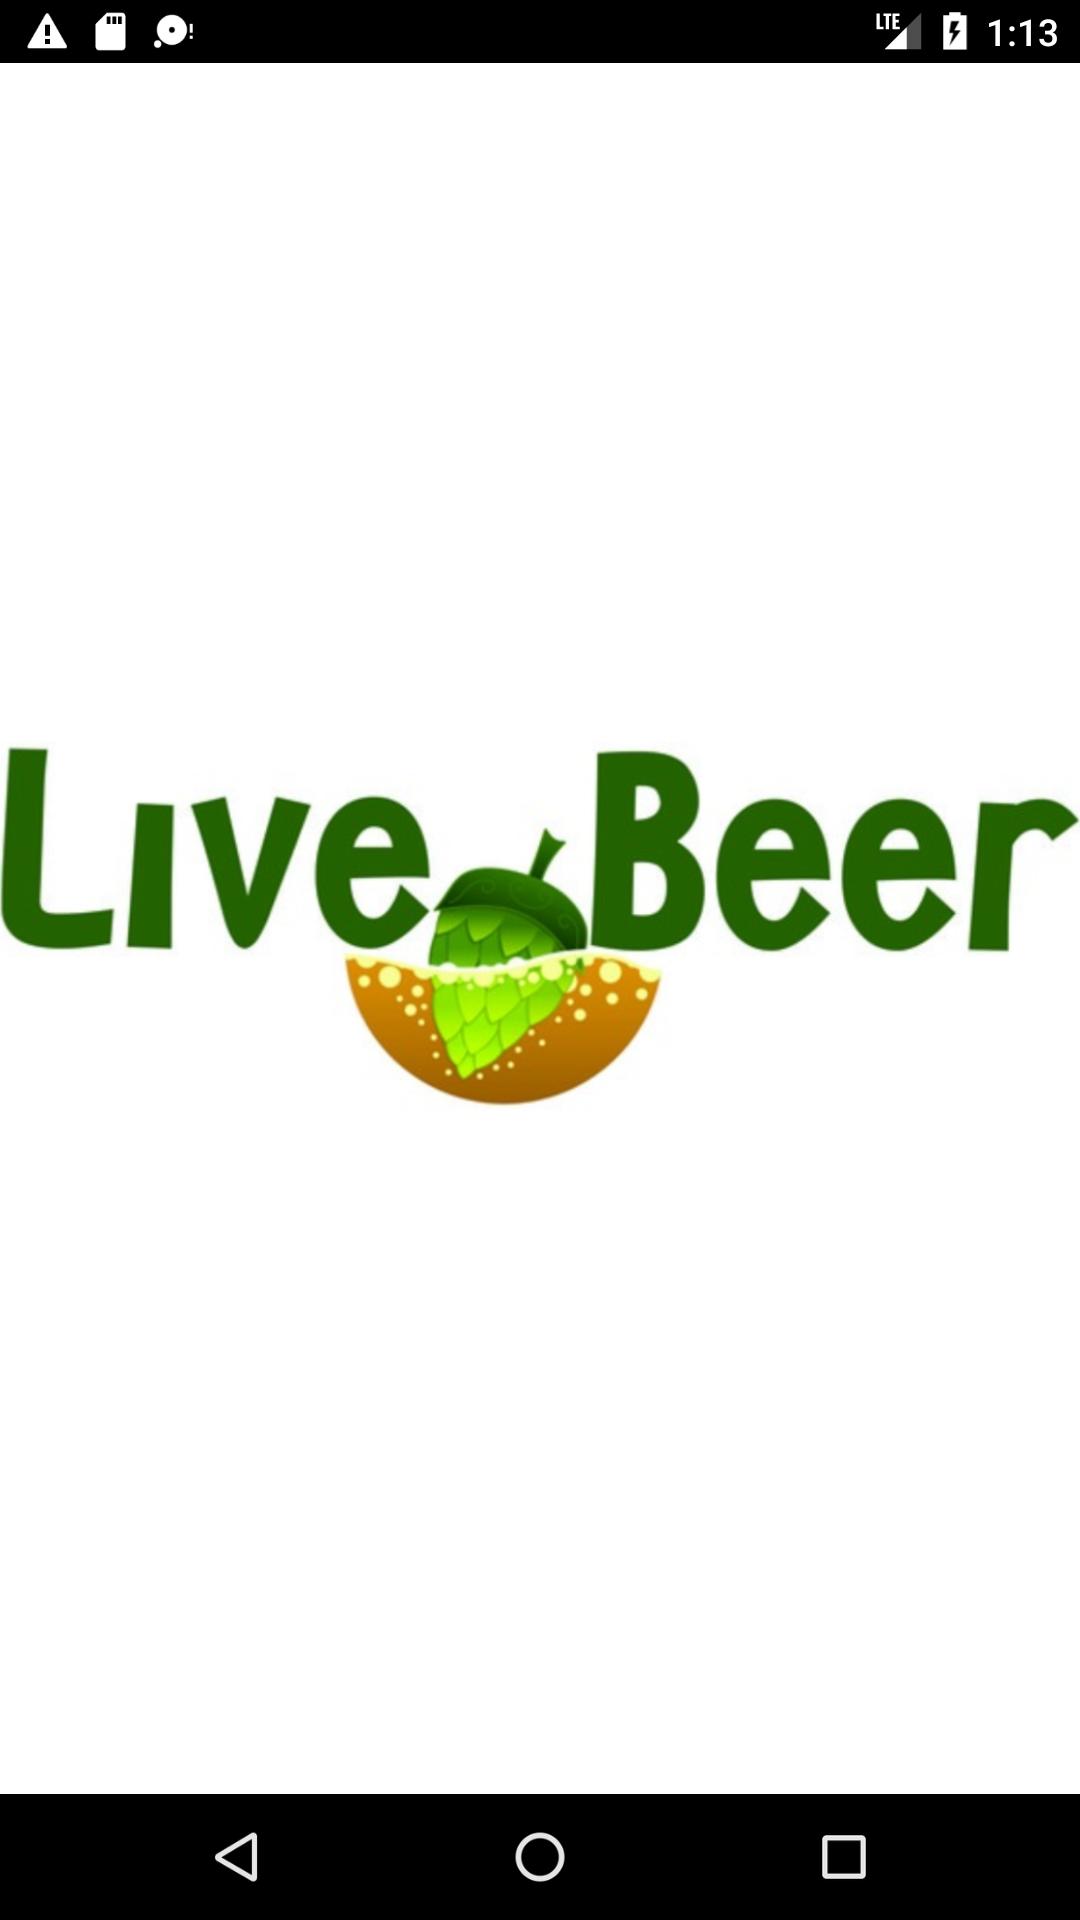 Live beer